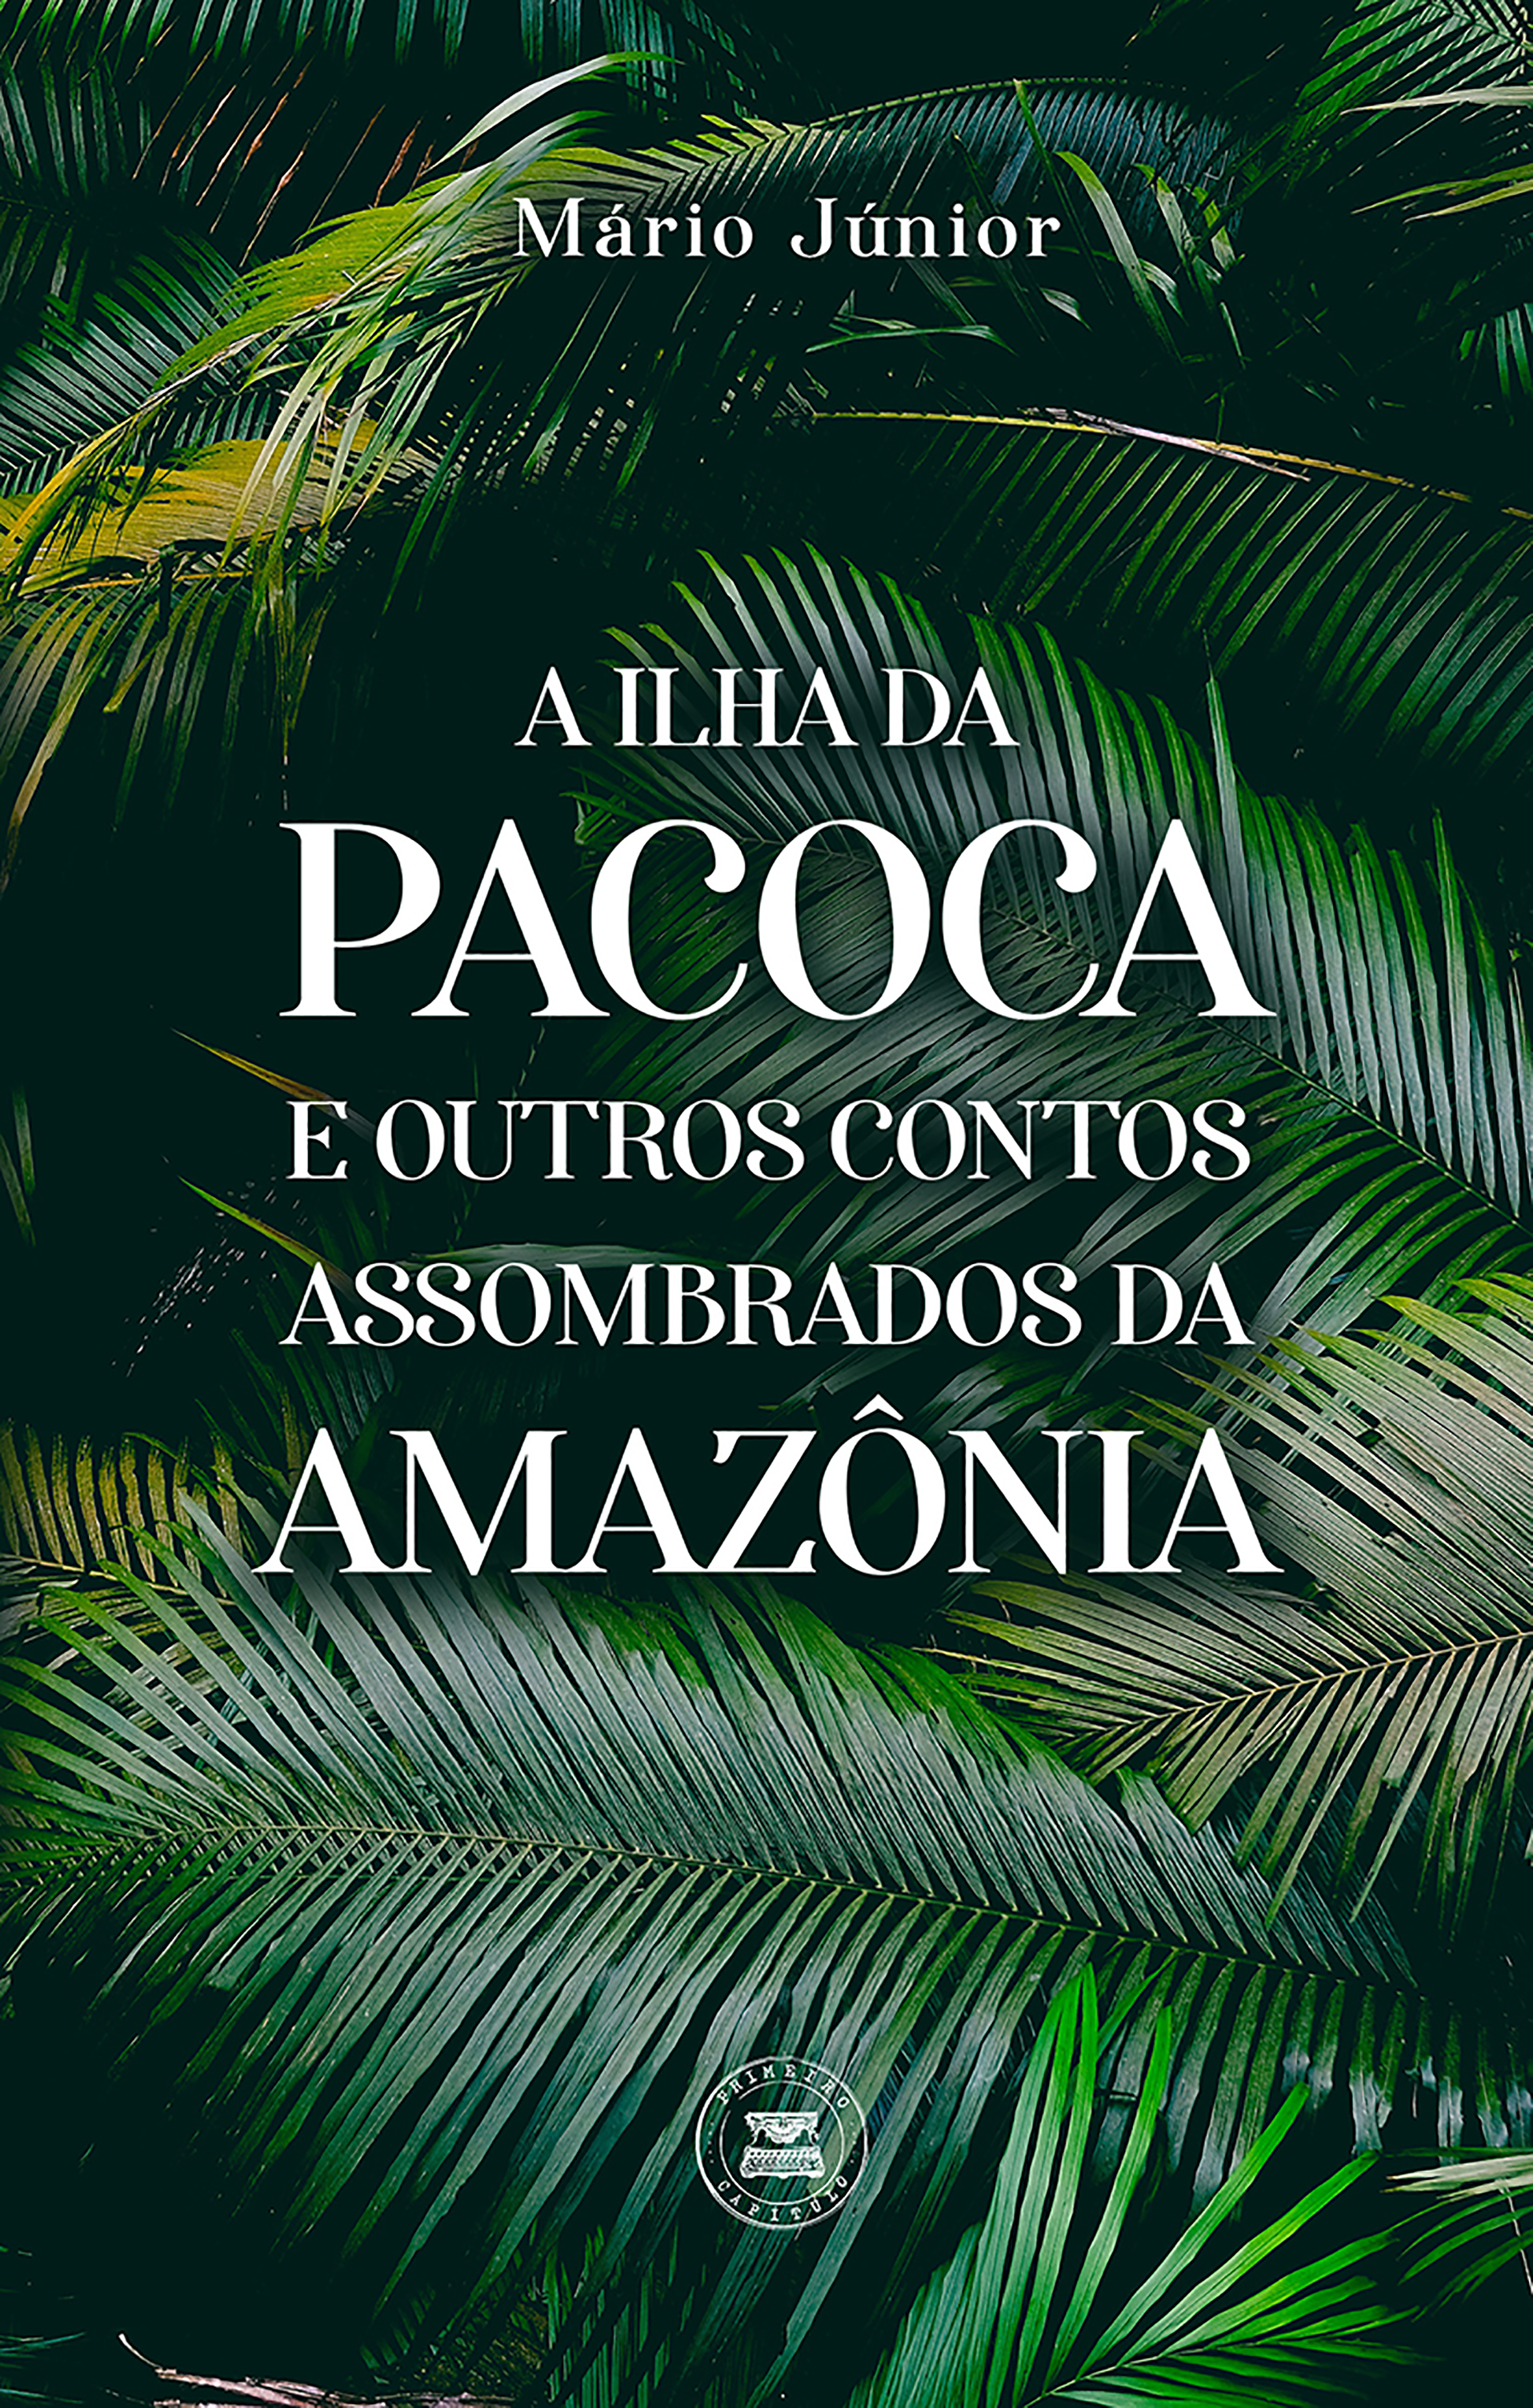 A Ilha da Pacoca e outros contos assombrados da Amazônia